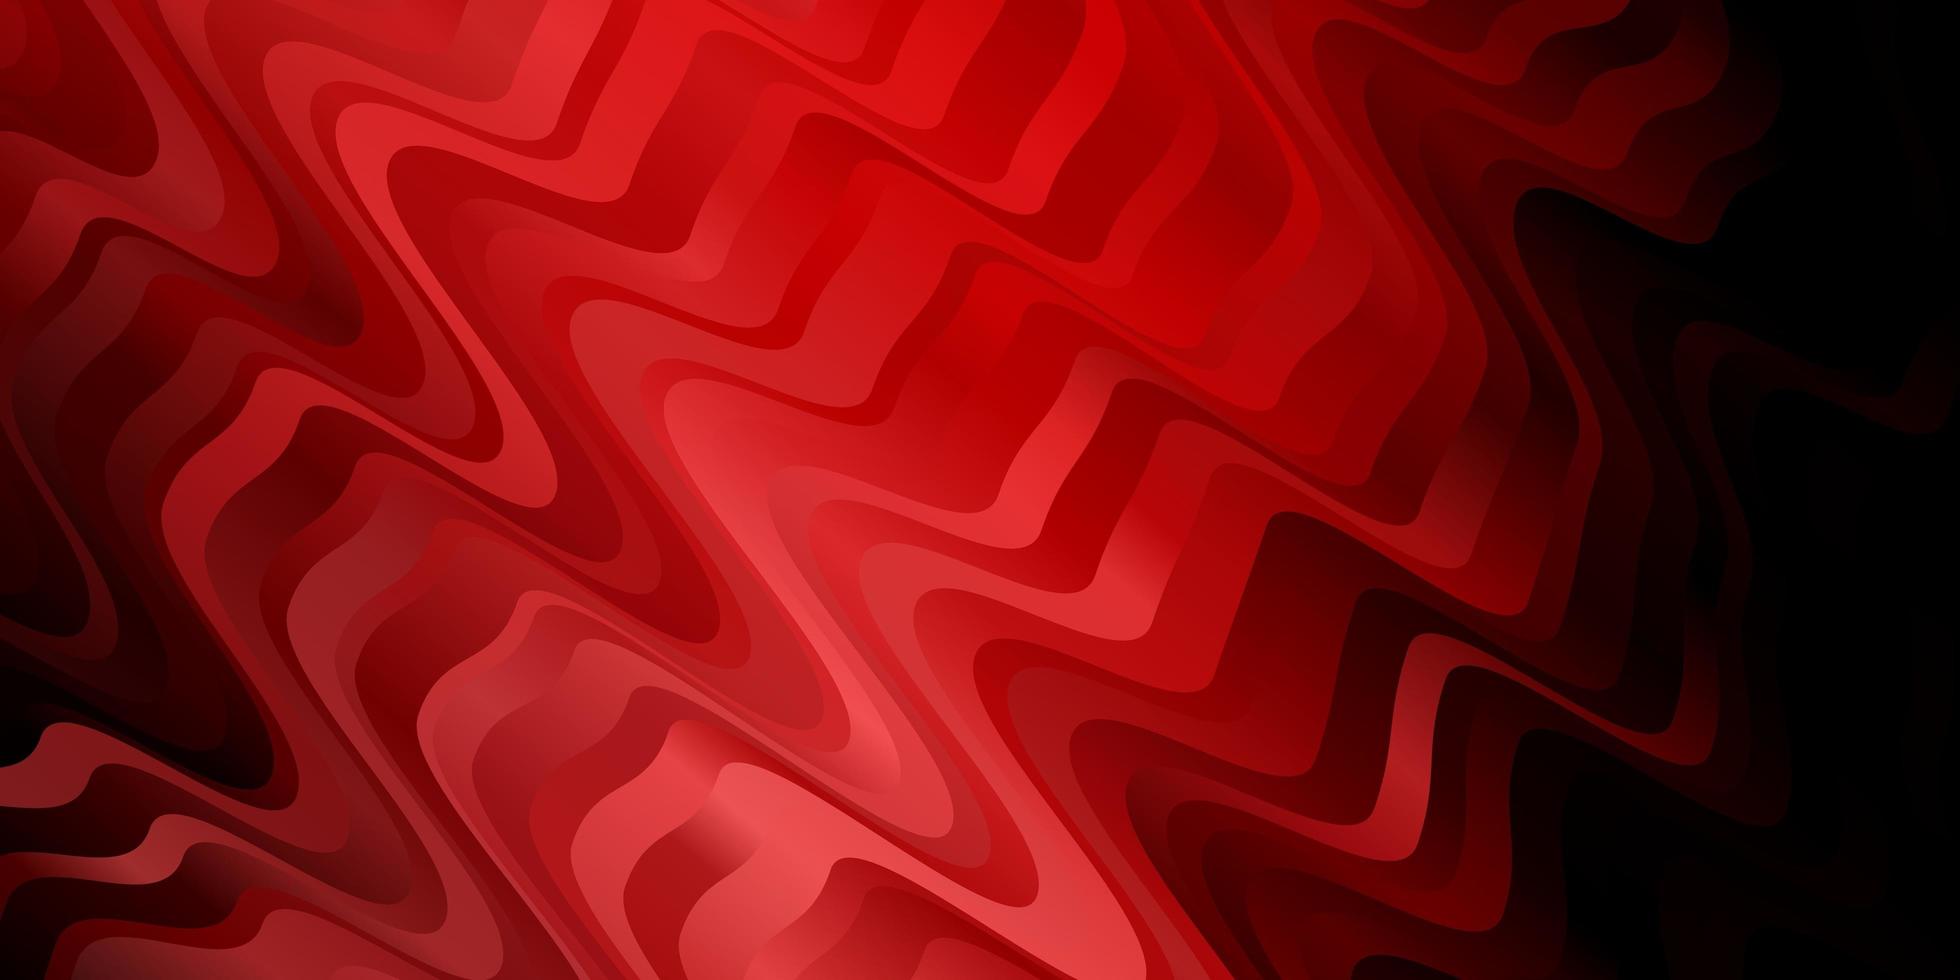 mörk röd vektor bakgrund med böjda linjer illustration i halvton stil med lutning kurvor mönster för annonser reklam